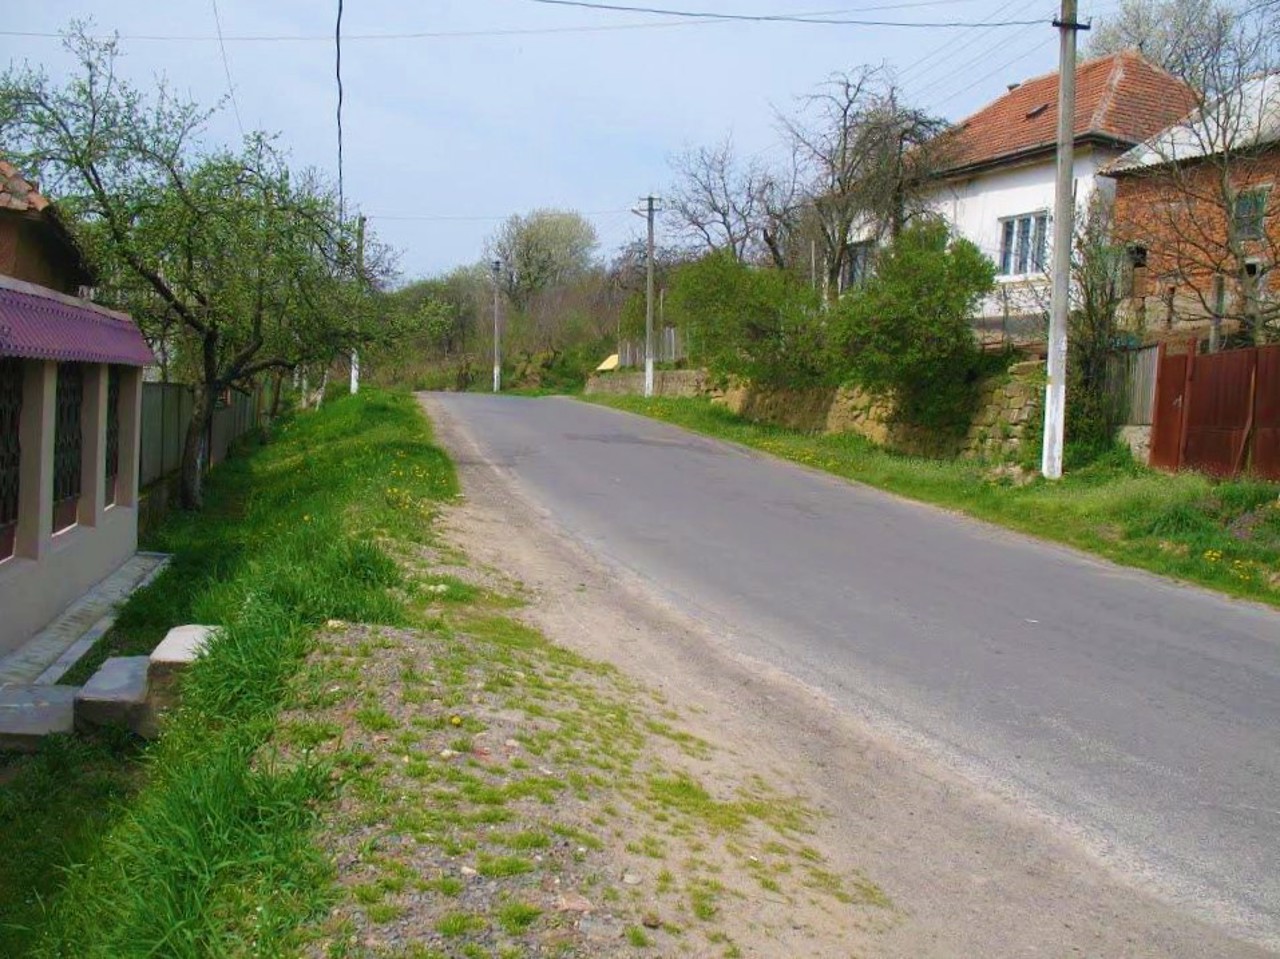 Verkhni Remety village